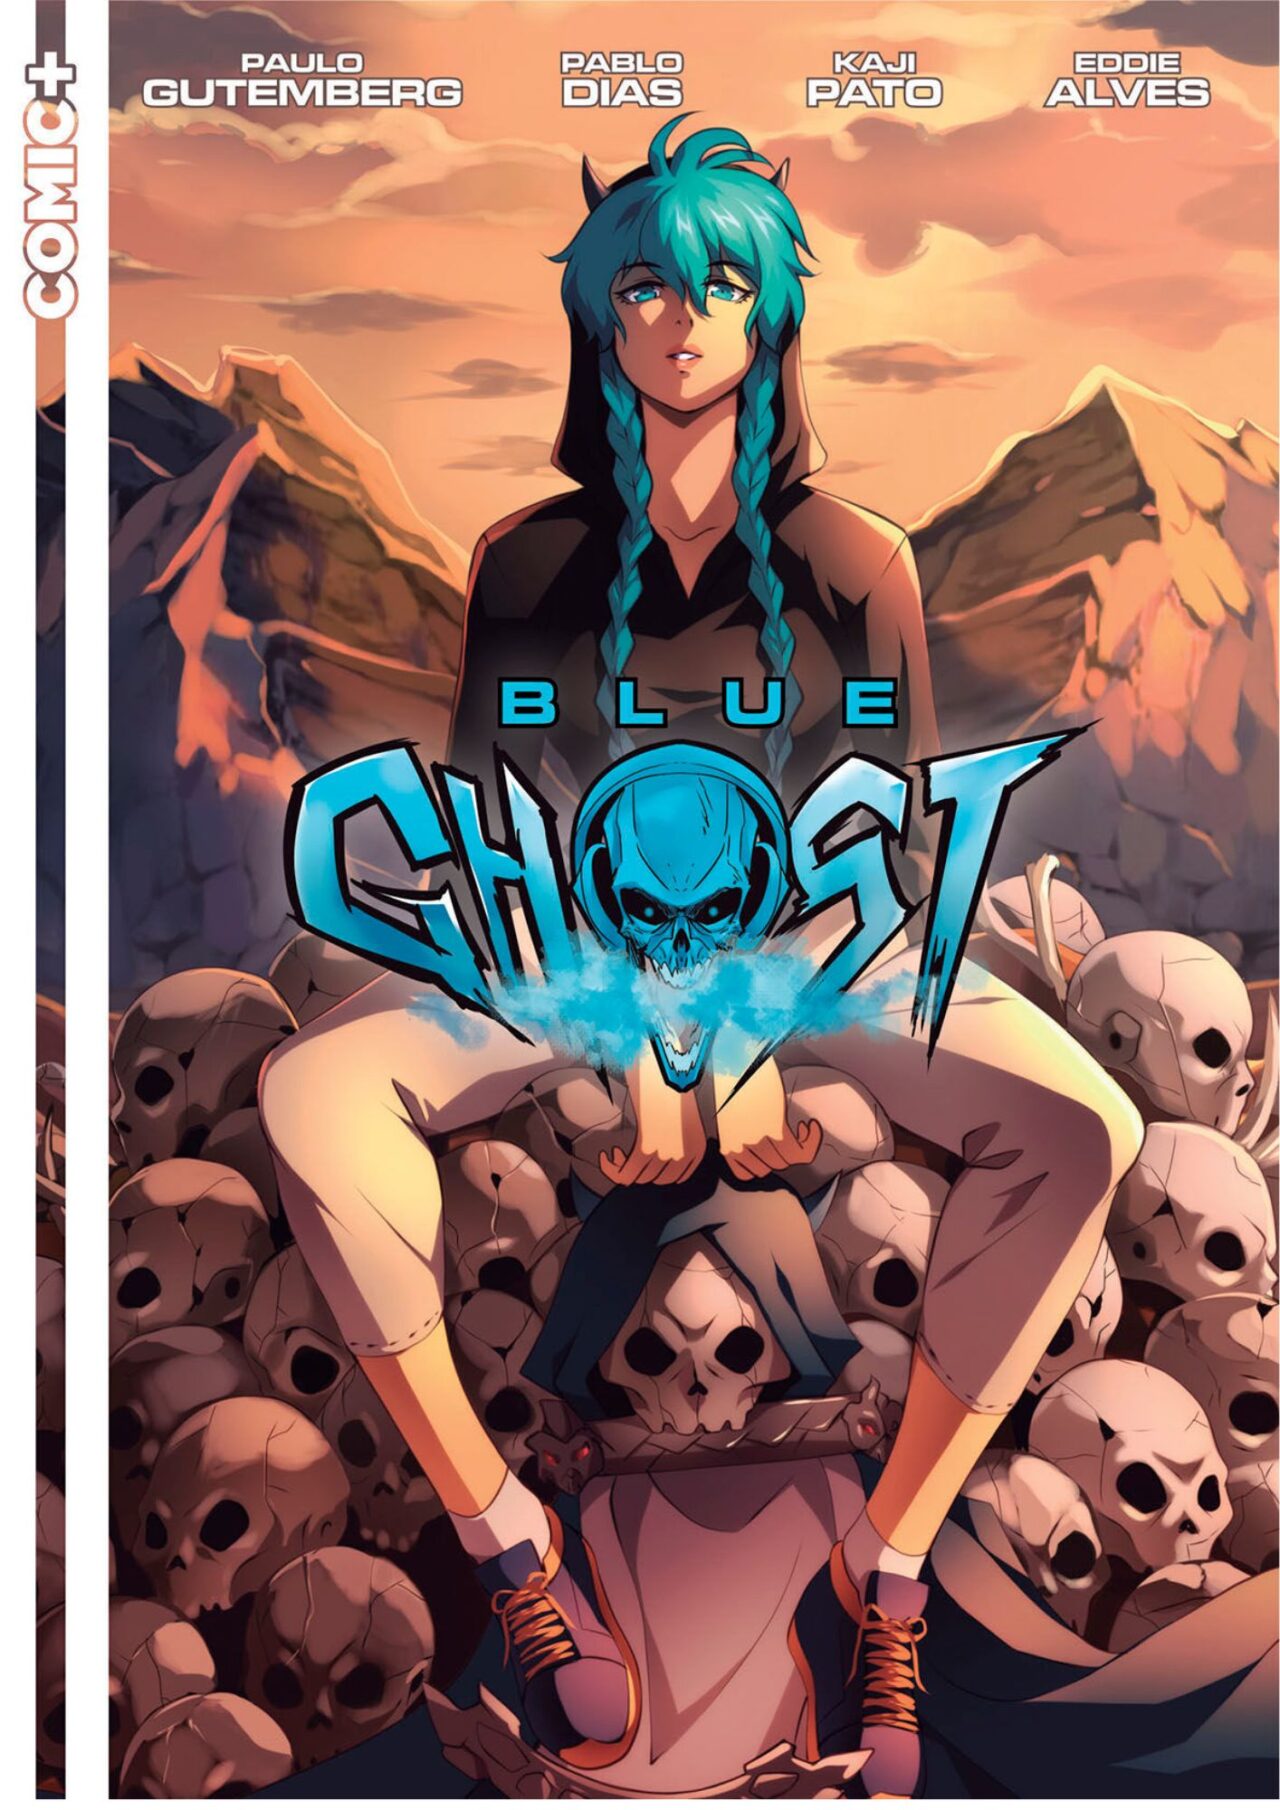 Blue Ghost traz nova super-heroína dos quadrinhos nacionais